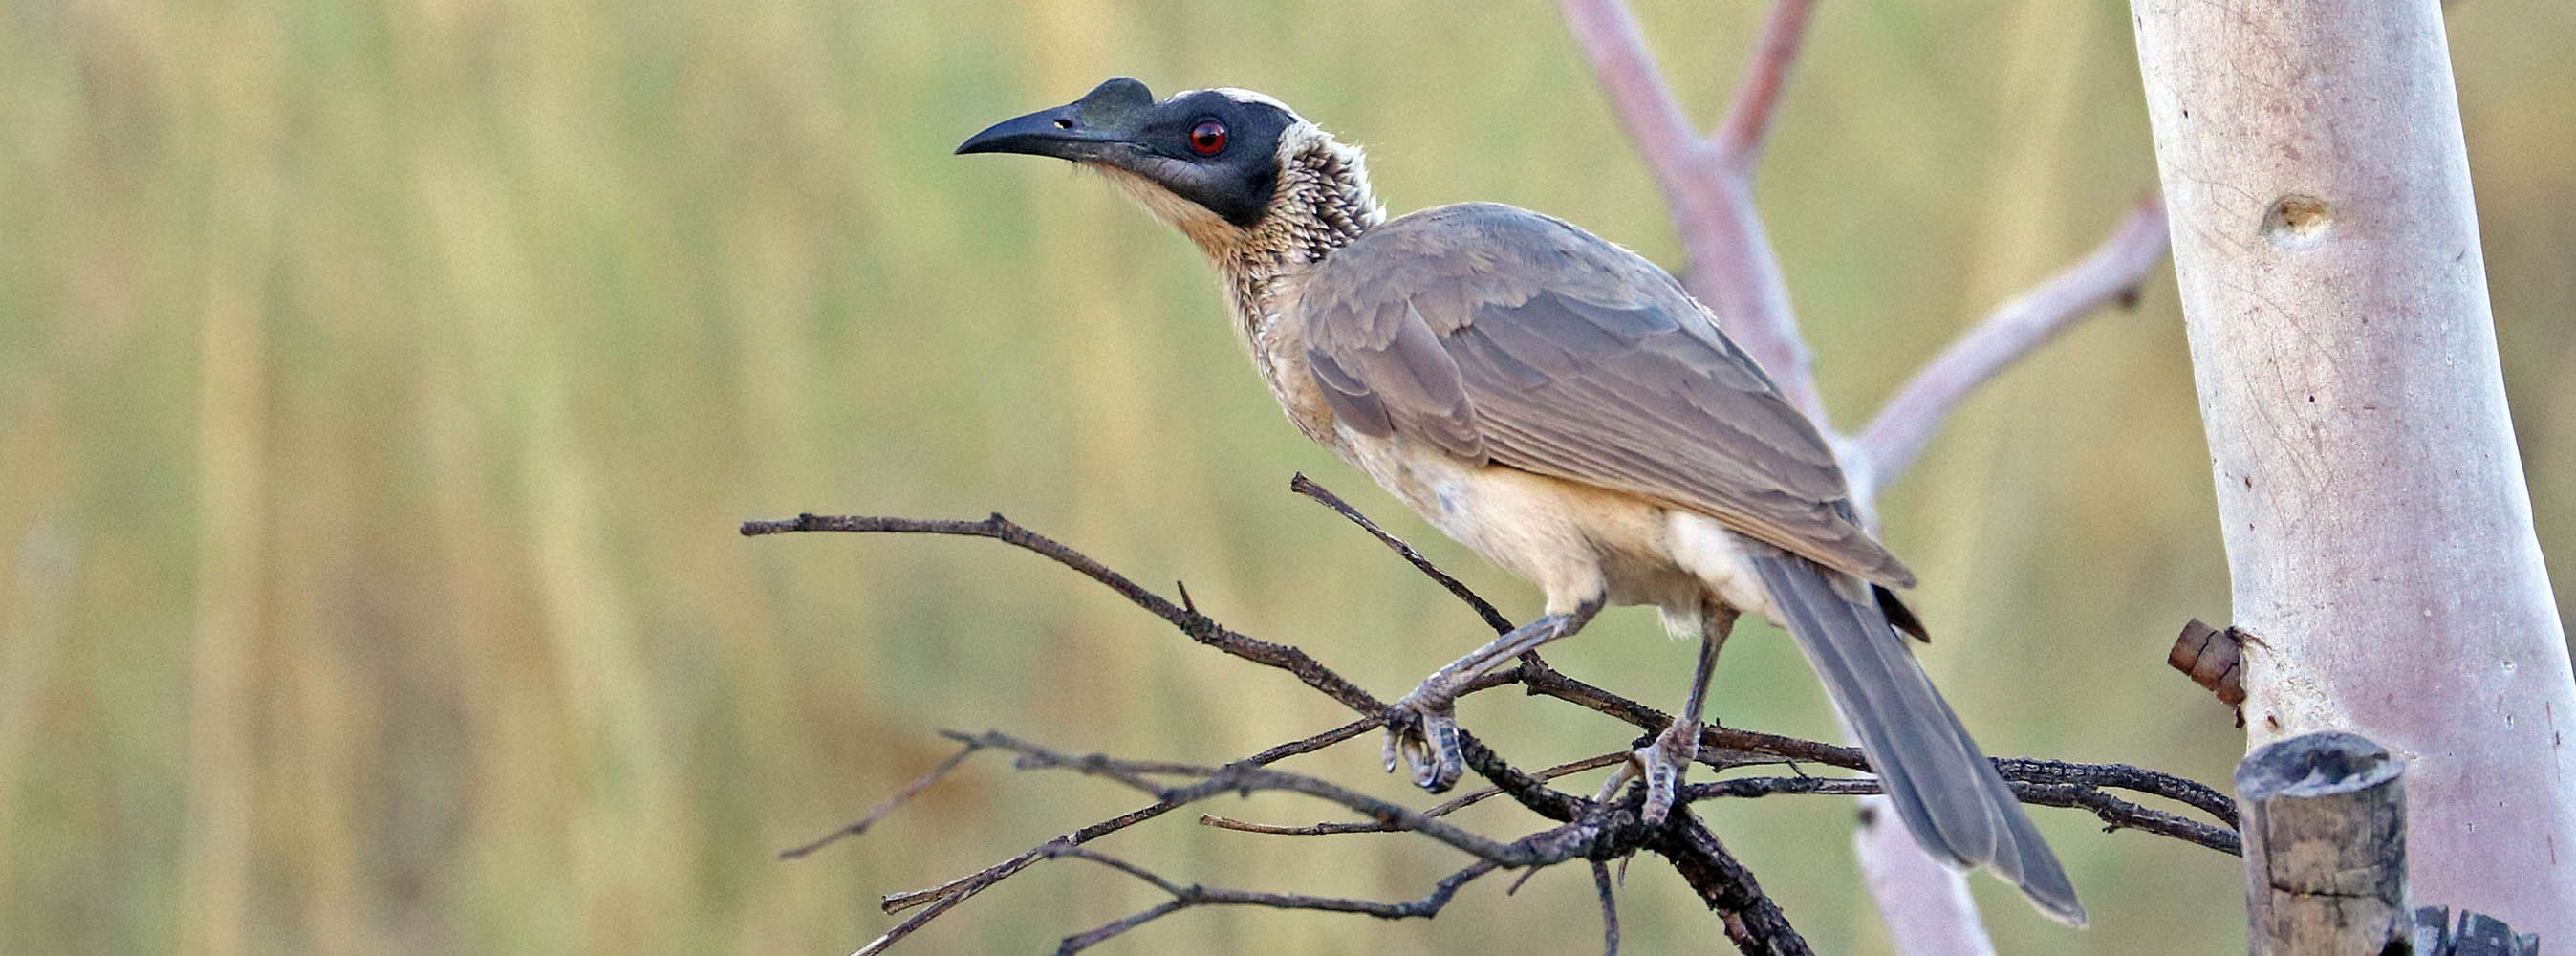 friarbird-silver-crowned-lake-mooroondah-mt-isa